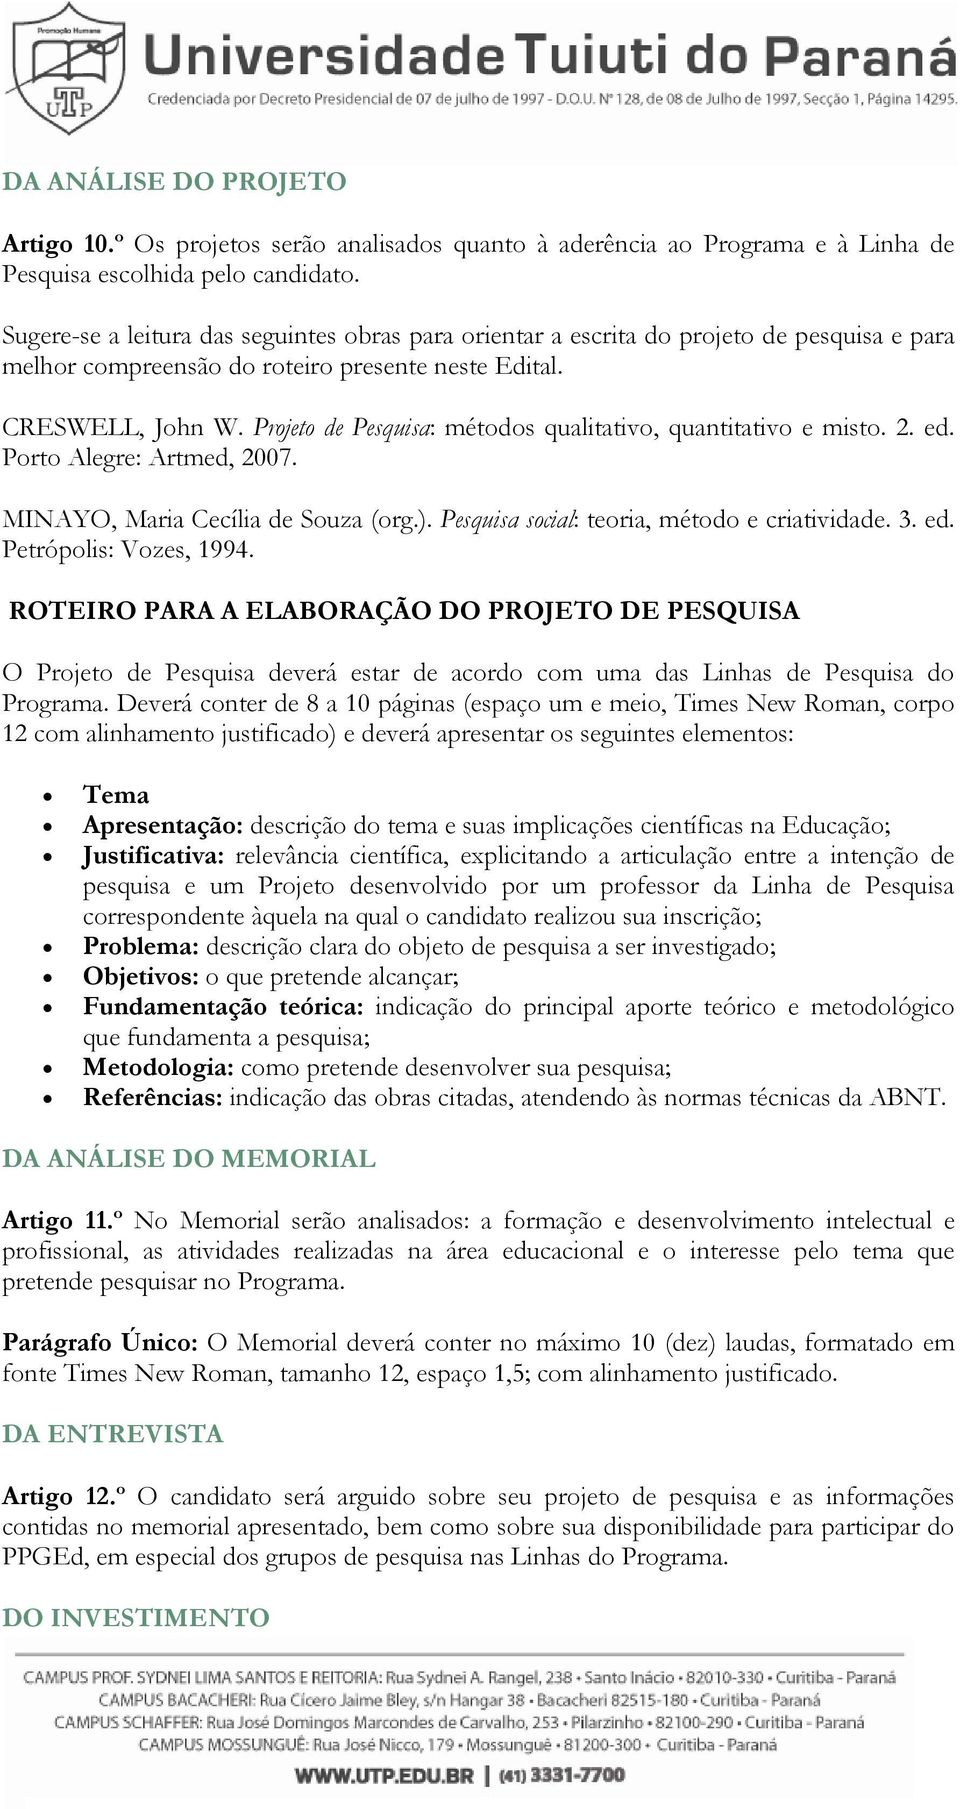 Projeto de Pesquisa: métodos qualitativo, quantitativo e misto. 2. ed. Porto Alegre: Artmed, 2007. MINAYO, Maria Cecília de Souza (org.). Pesquisa social: teoria, método e criatividade. 3. ed. Petrópolis: Vozes, 1994.